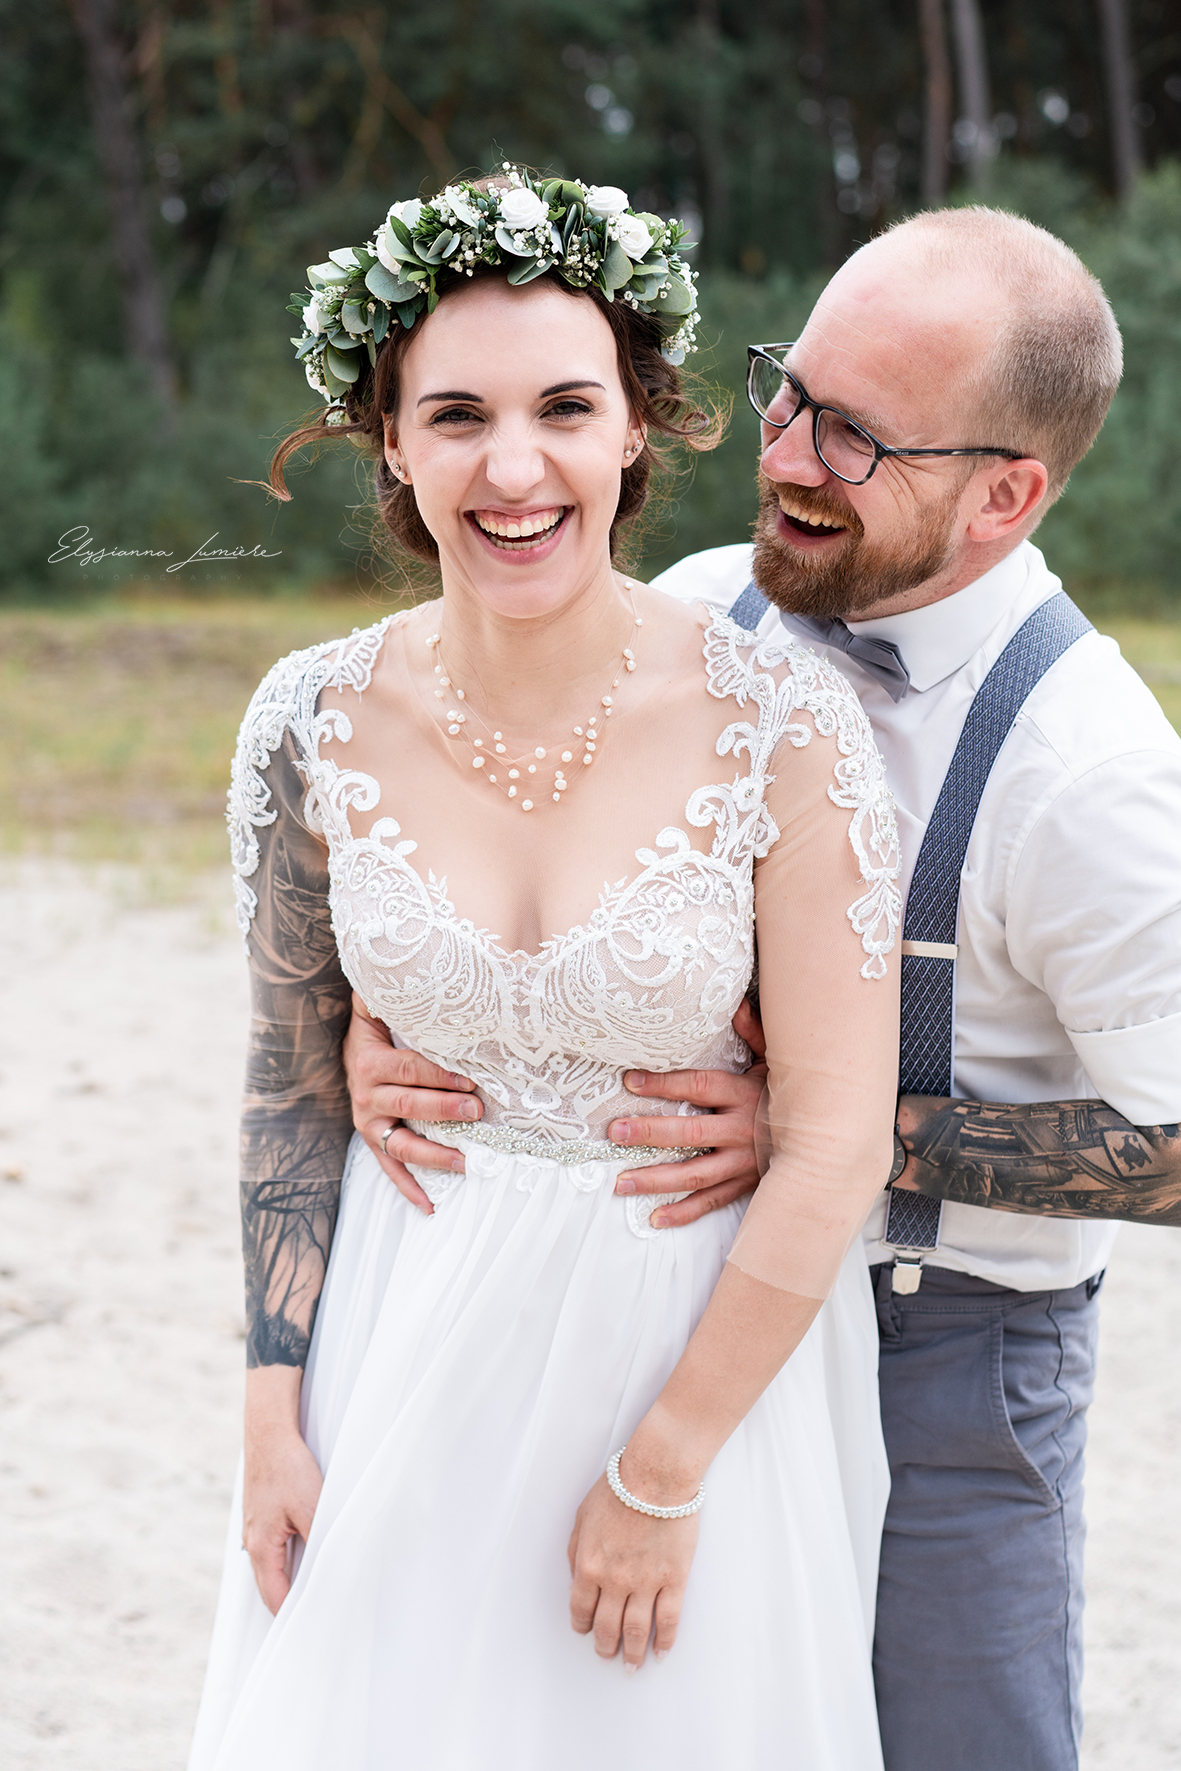 Der Bräutigam erschreckt die lachende Braut